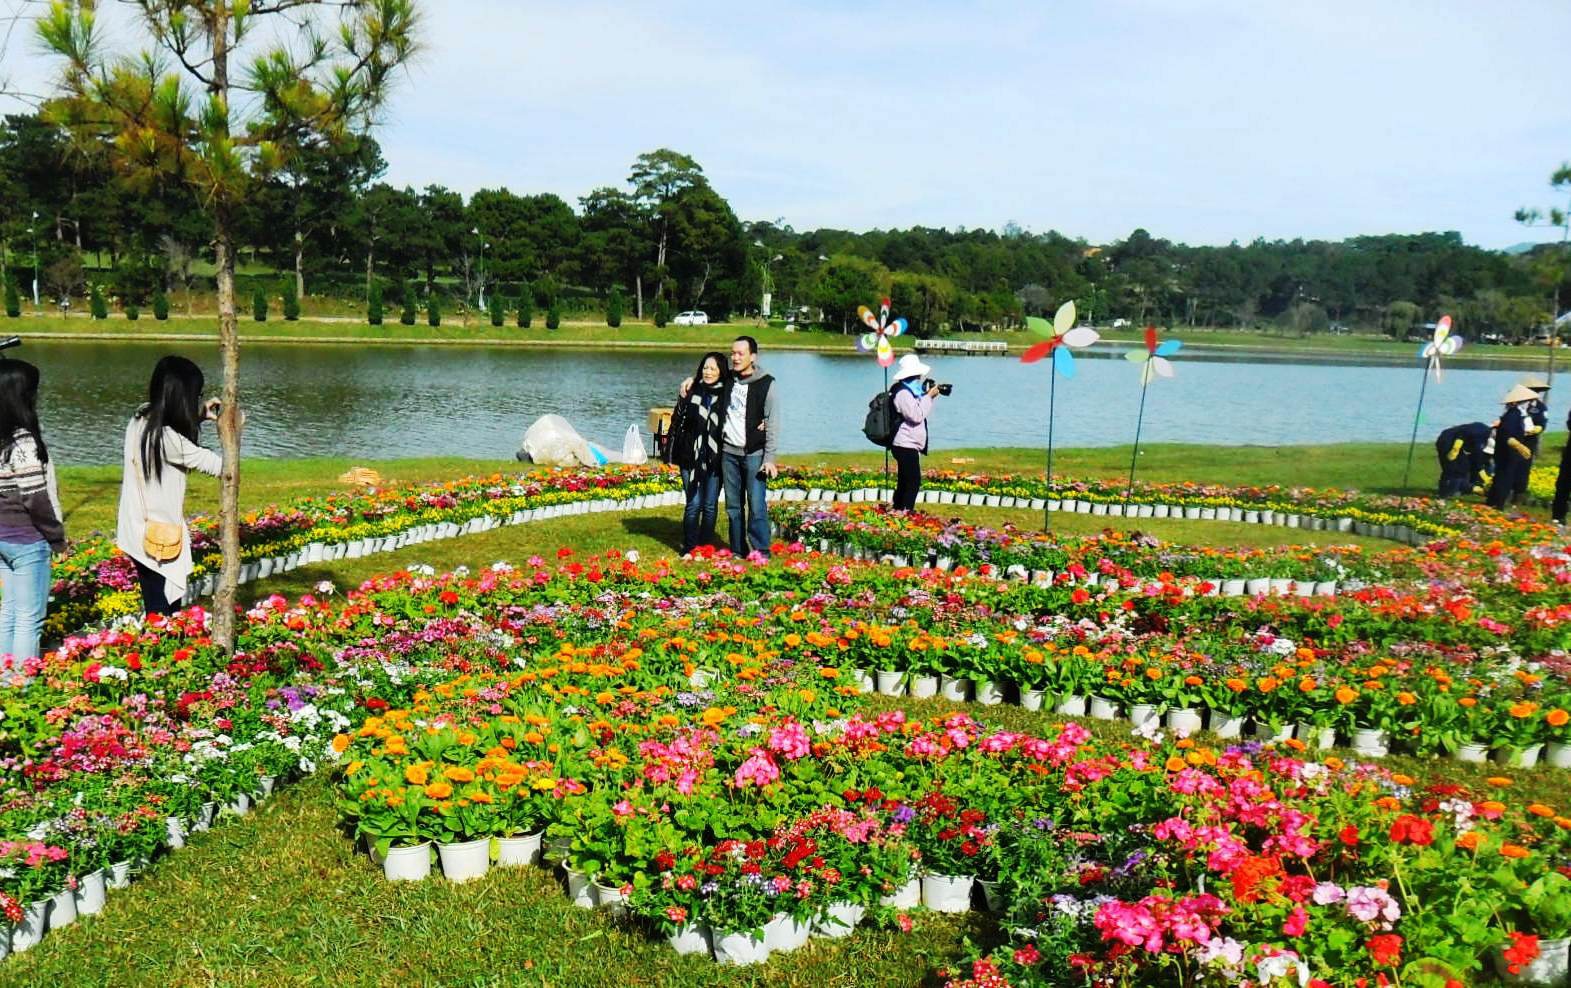  Festival hoa Đà Lạt lần thứ IX với chủ đề “Đà Lạt - Thành phố bốn mùa hoa” dự kiến tổ chức trong 2 tháng cuối năm 2022.